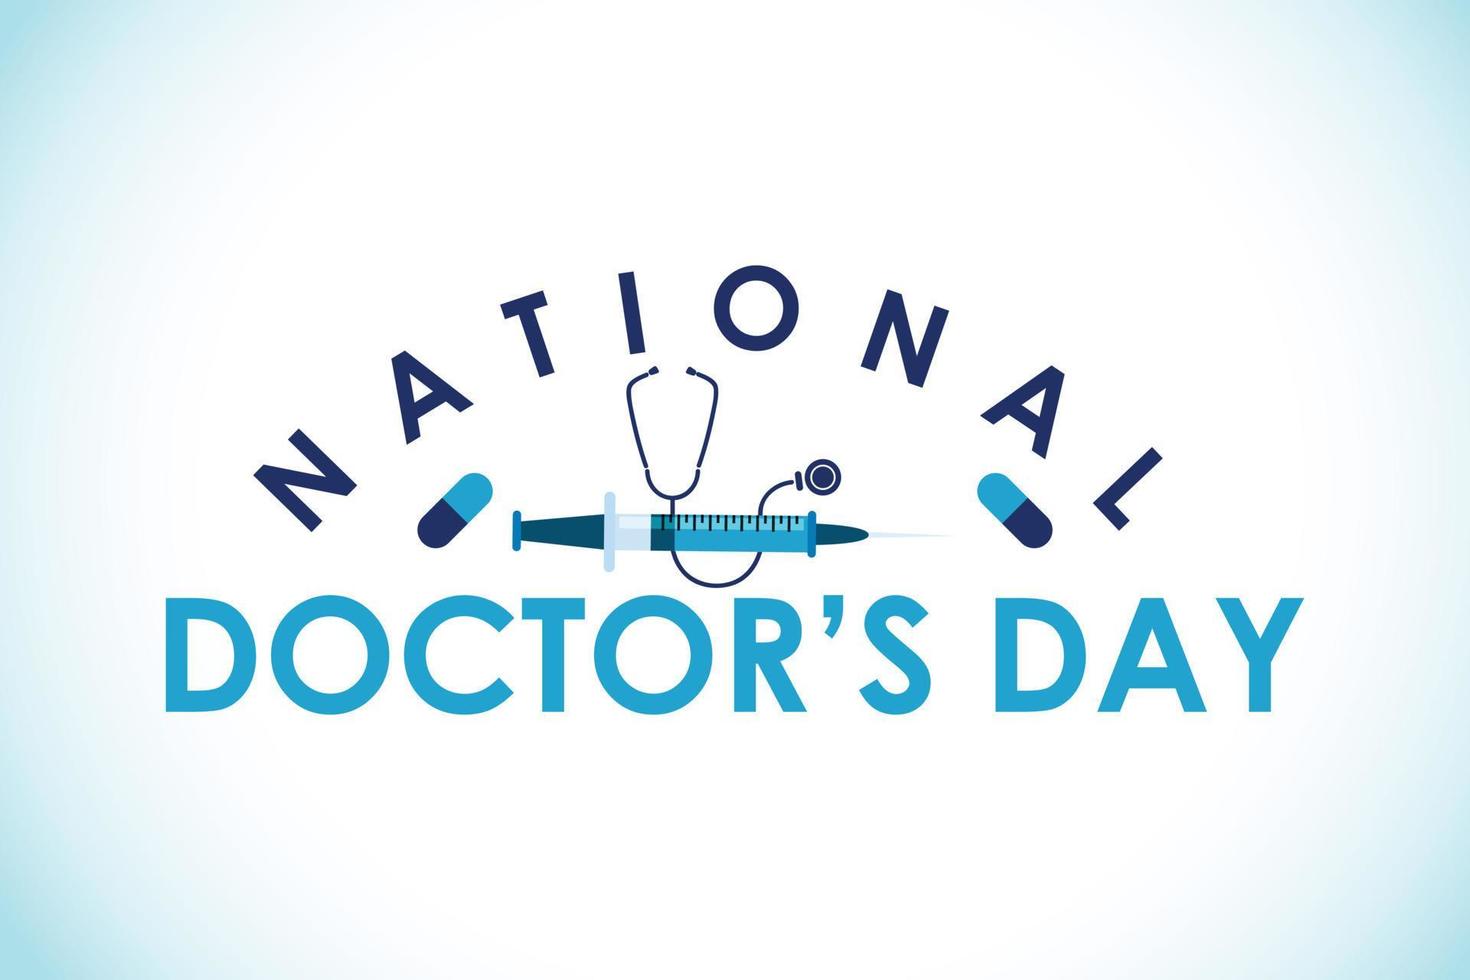 dia nacional do médico. modelo de dia mundial do médico. ilustração vetorial. vetor